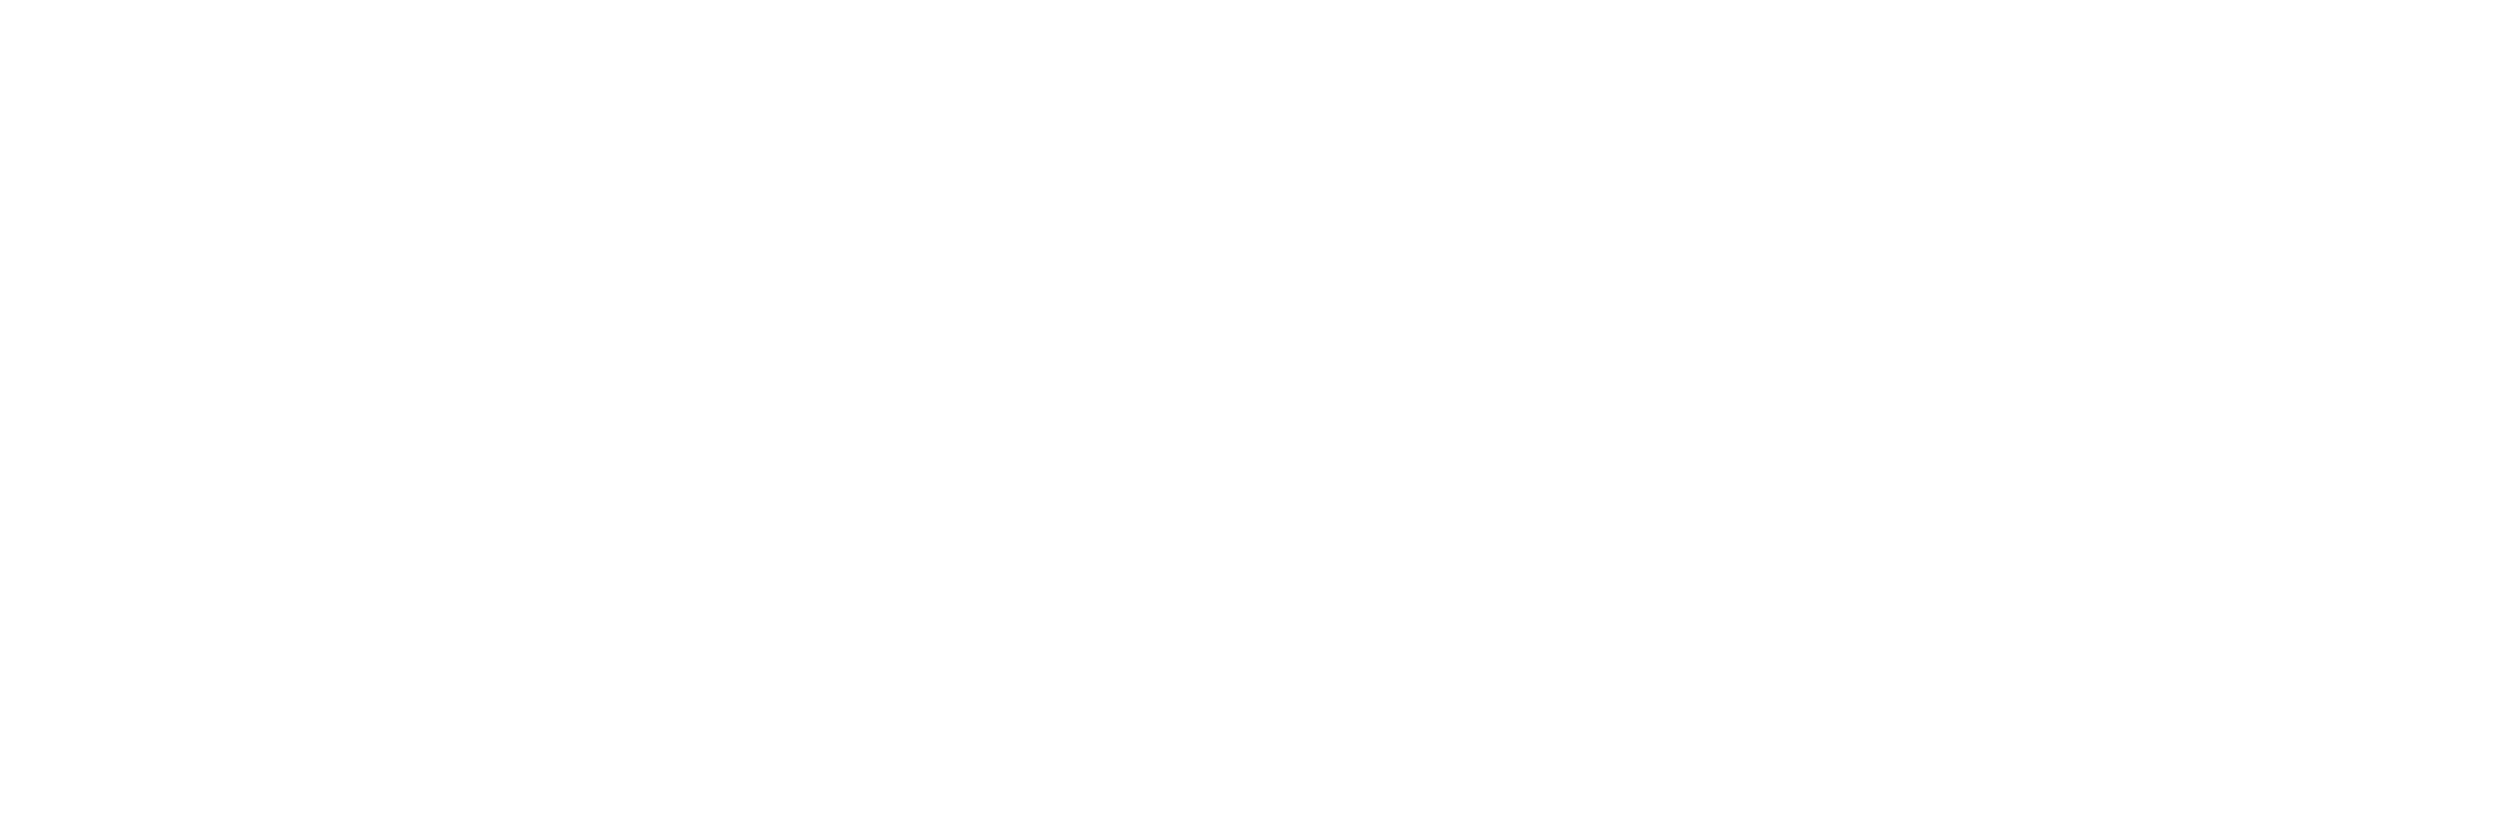 logo_ibcm_2021_white